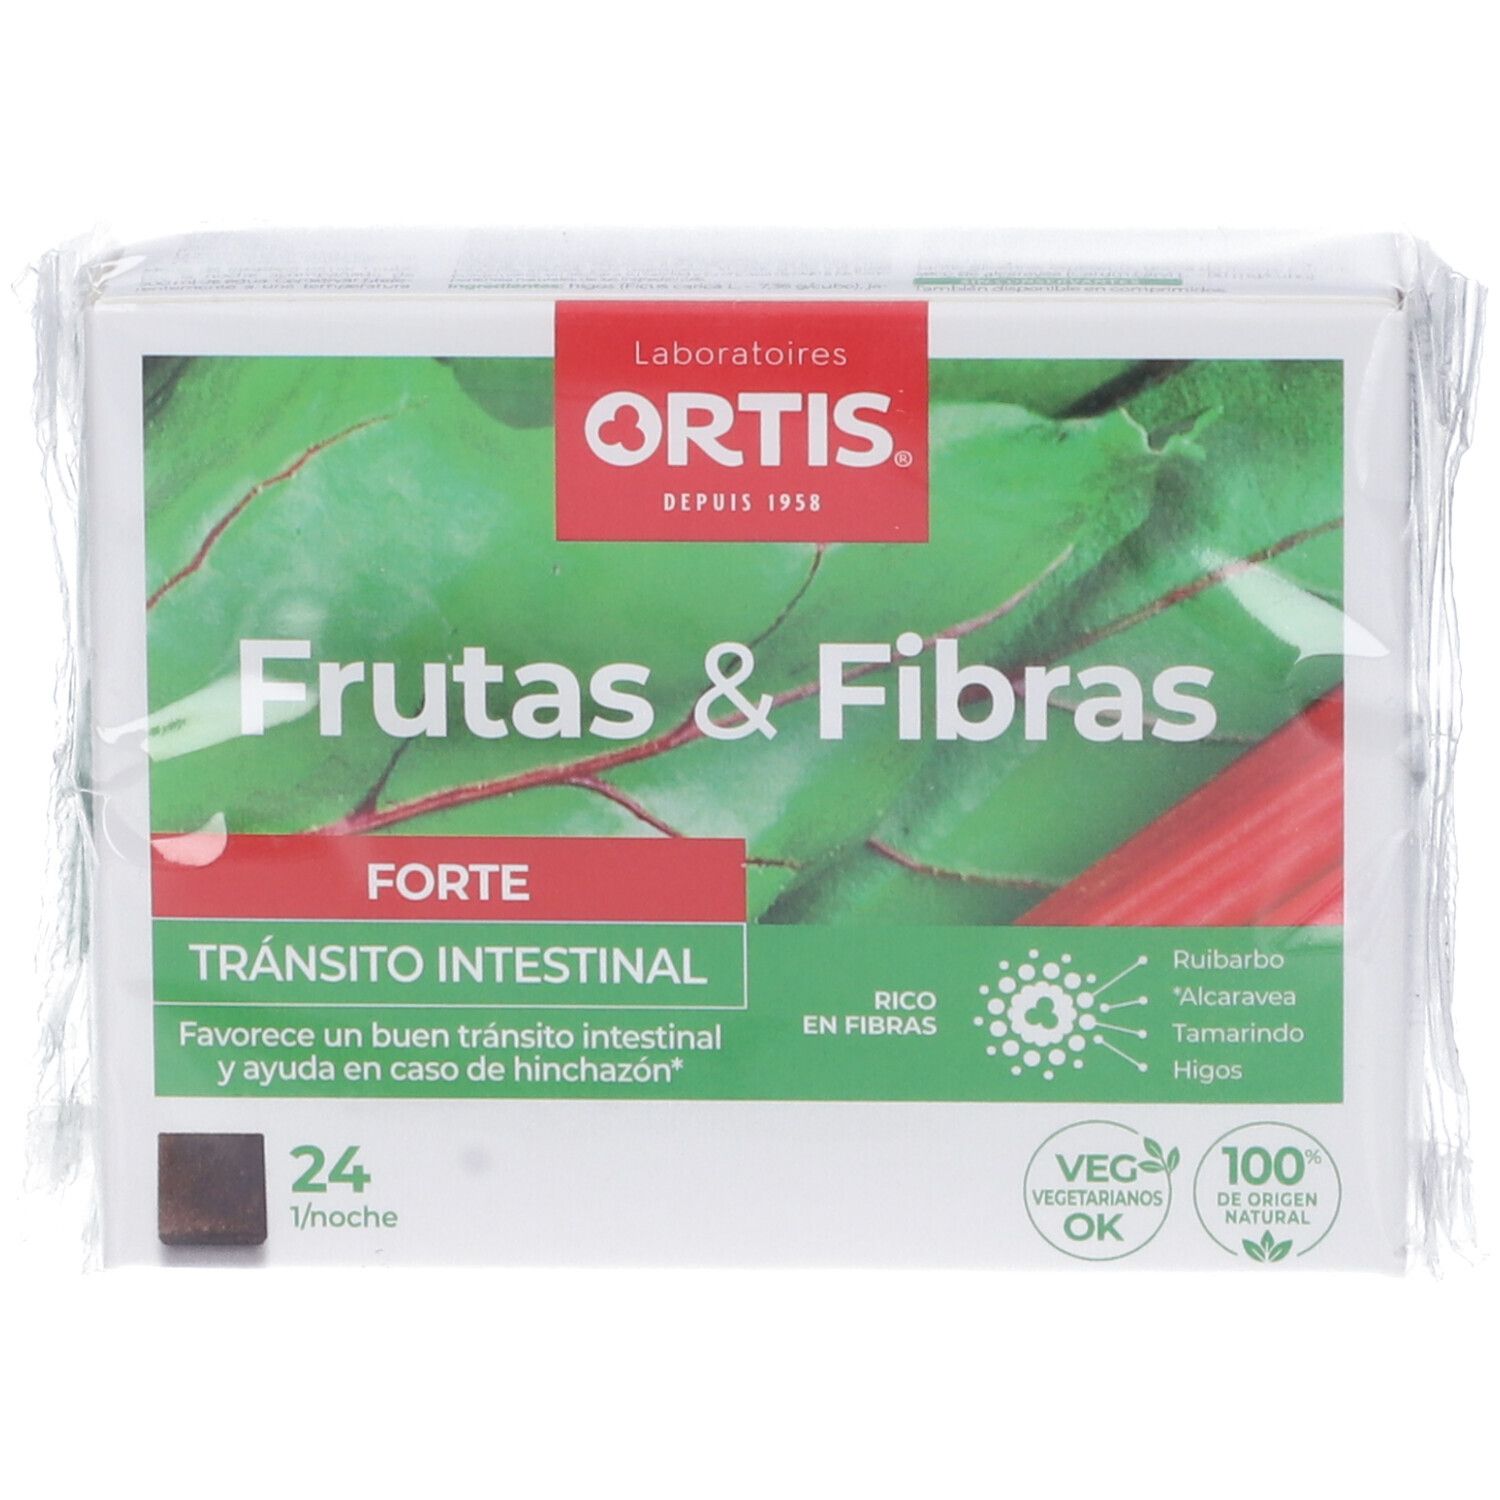 Ortis Frutta&Fibre Forte